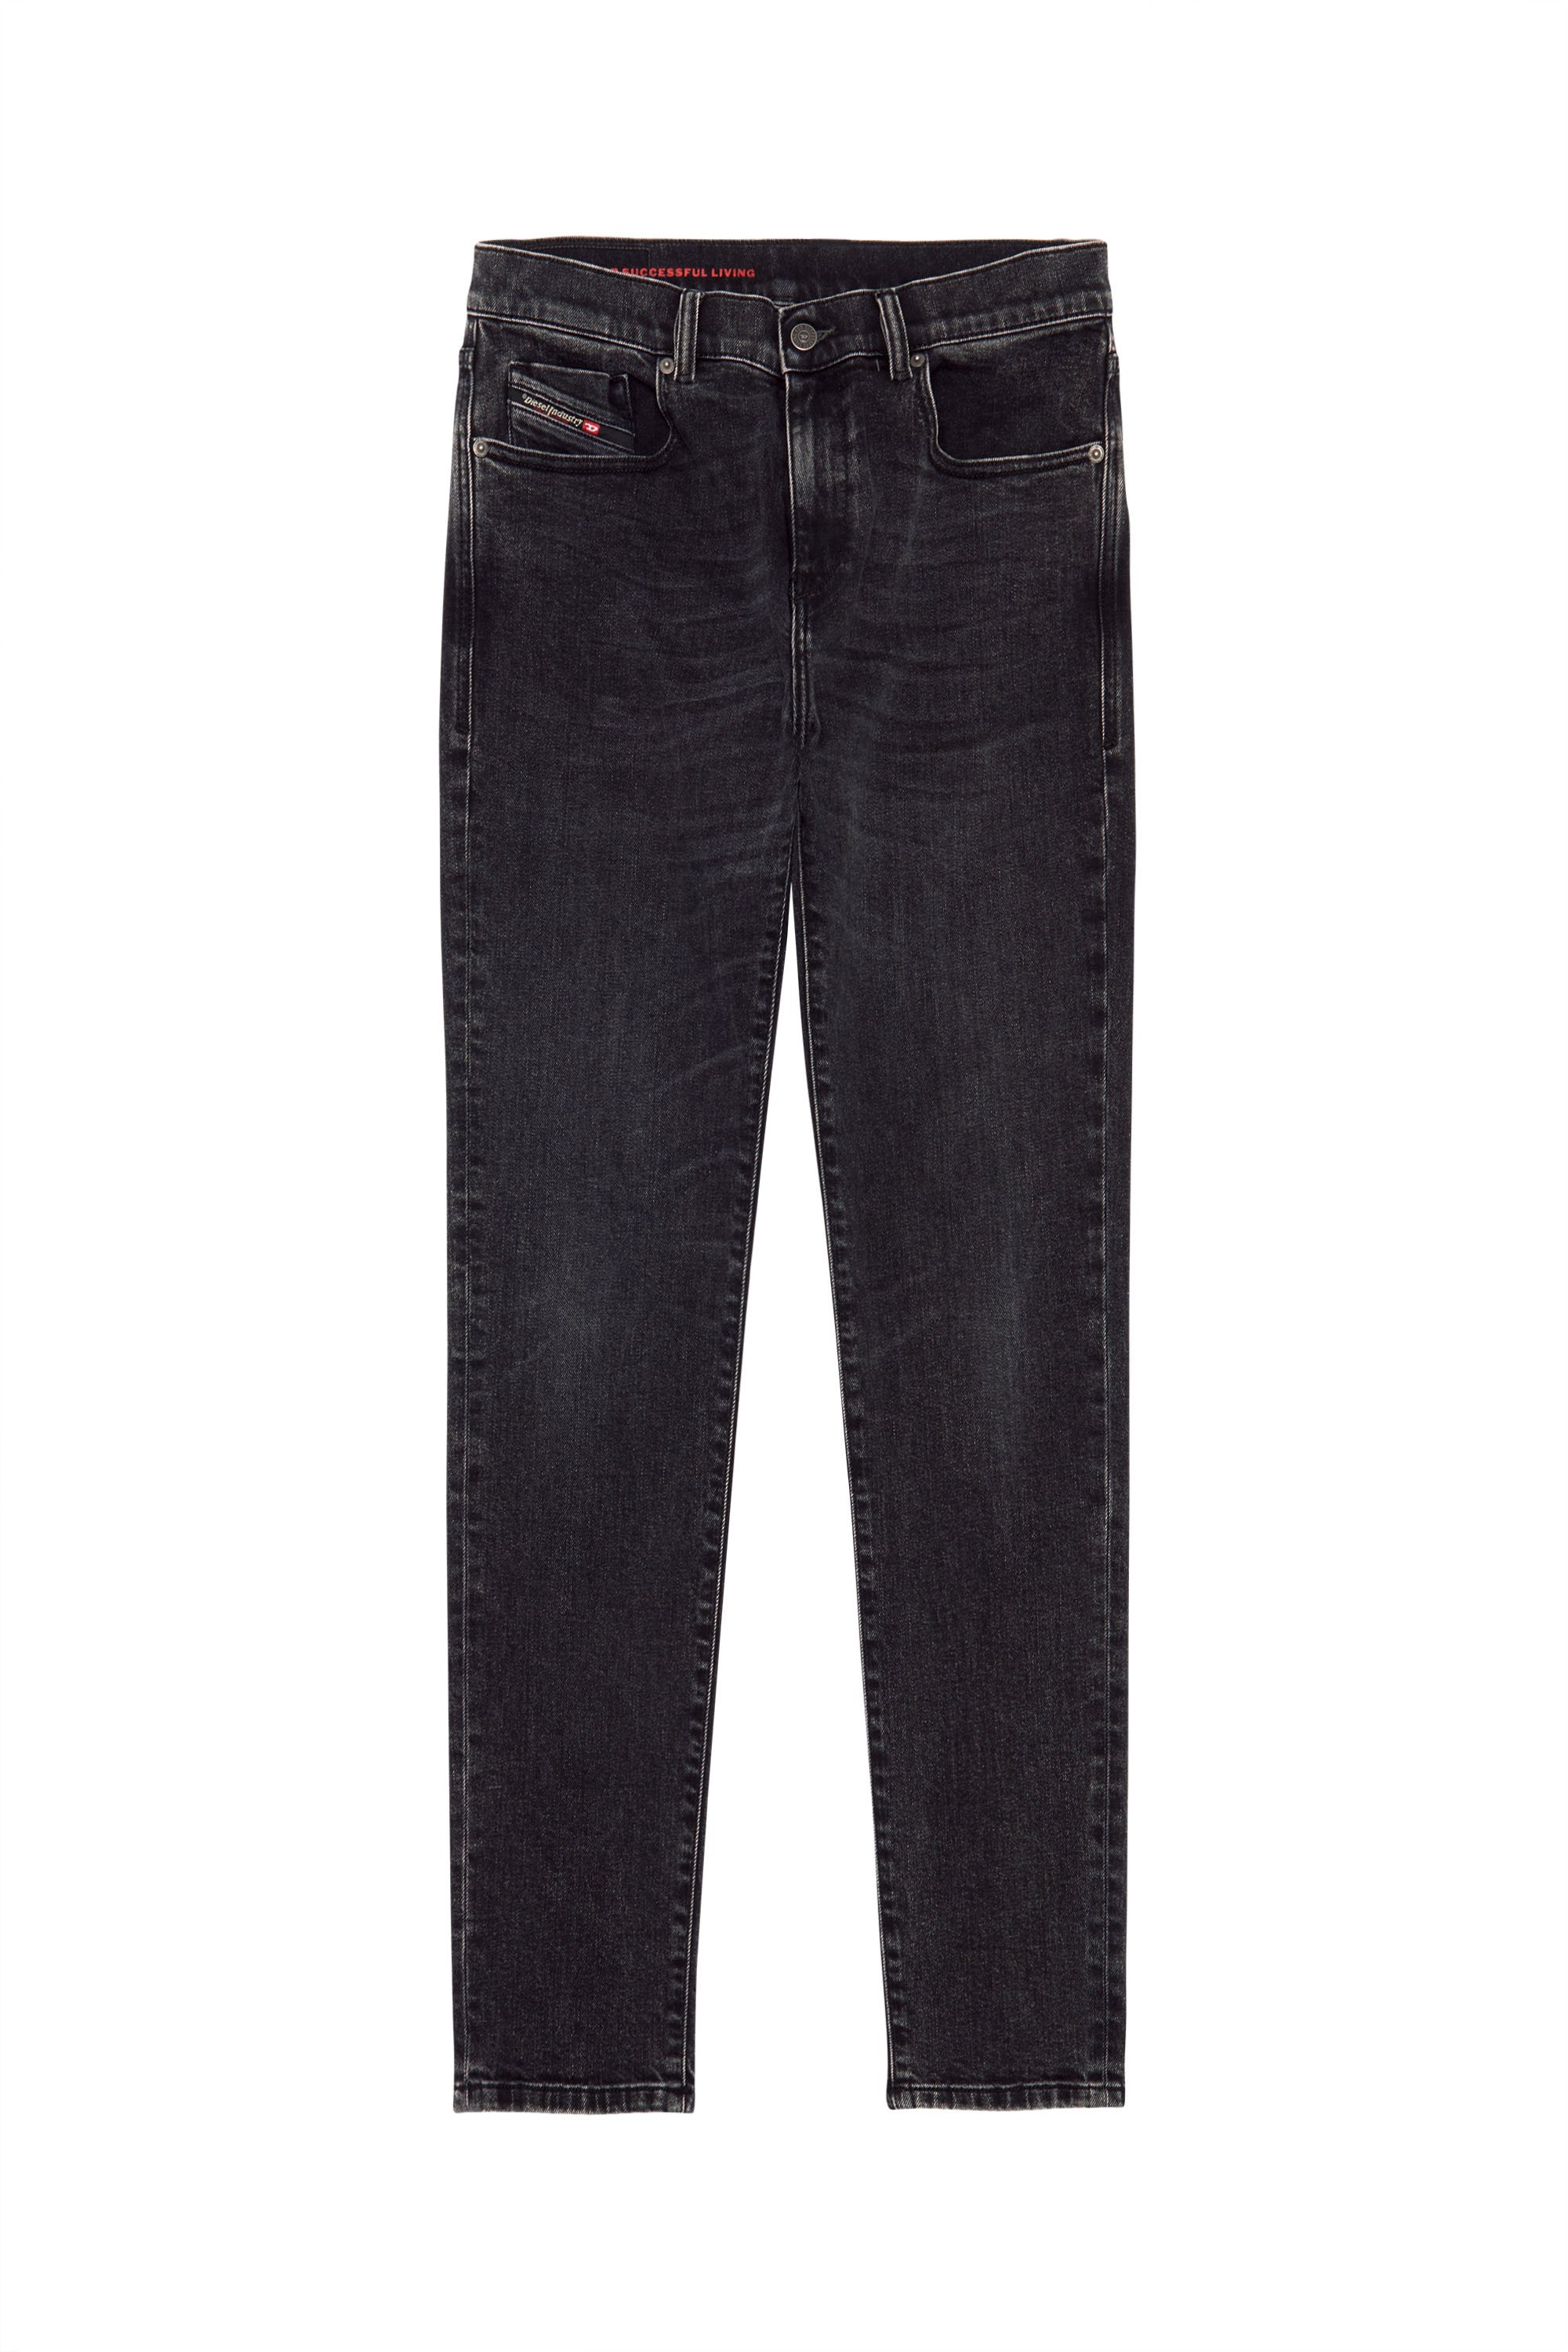 Slim Jeans 2019 D-Strukt 09B83, Noir/Gris foncé - Jeans